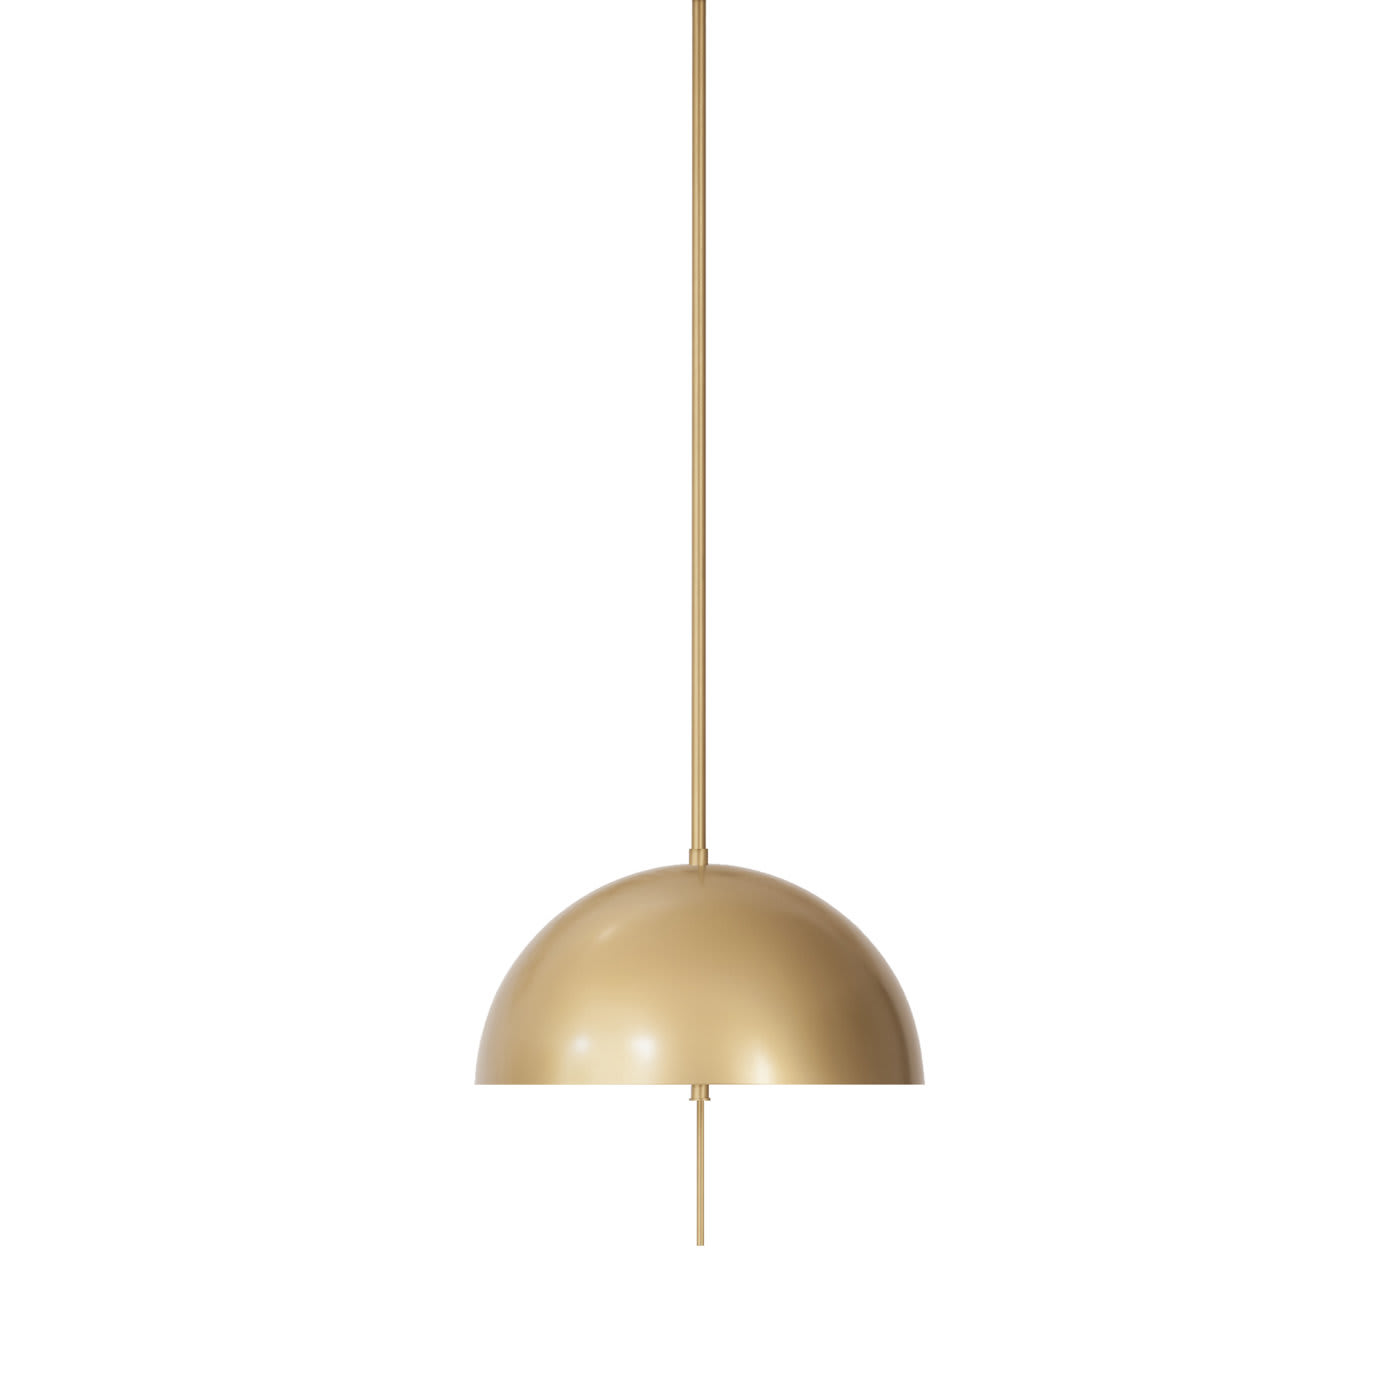 ABT03 ceiling lamp - Restart/Milano